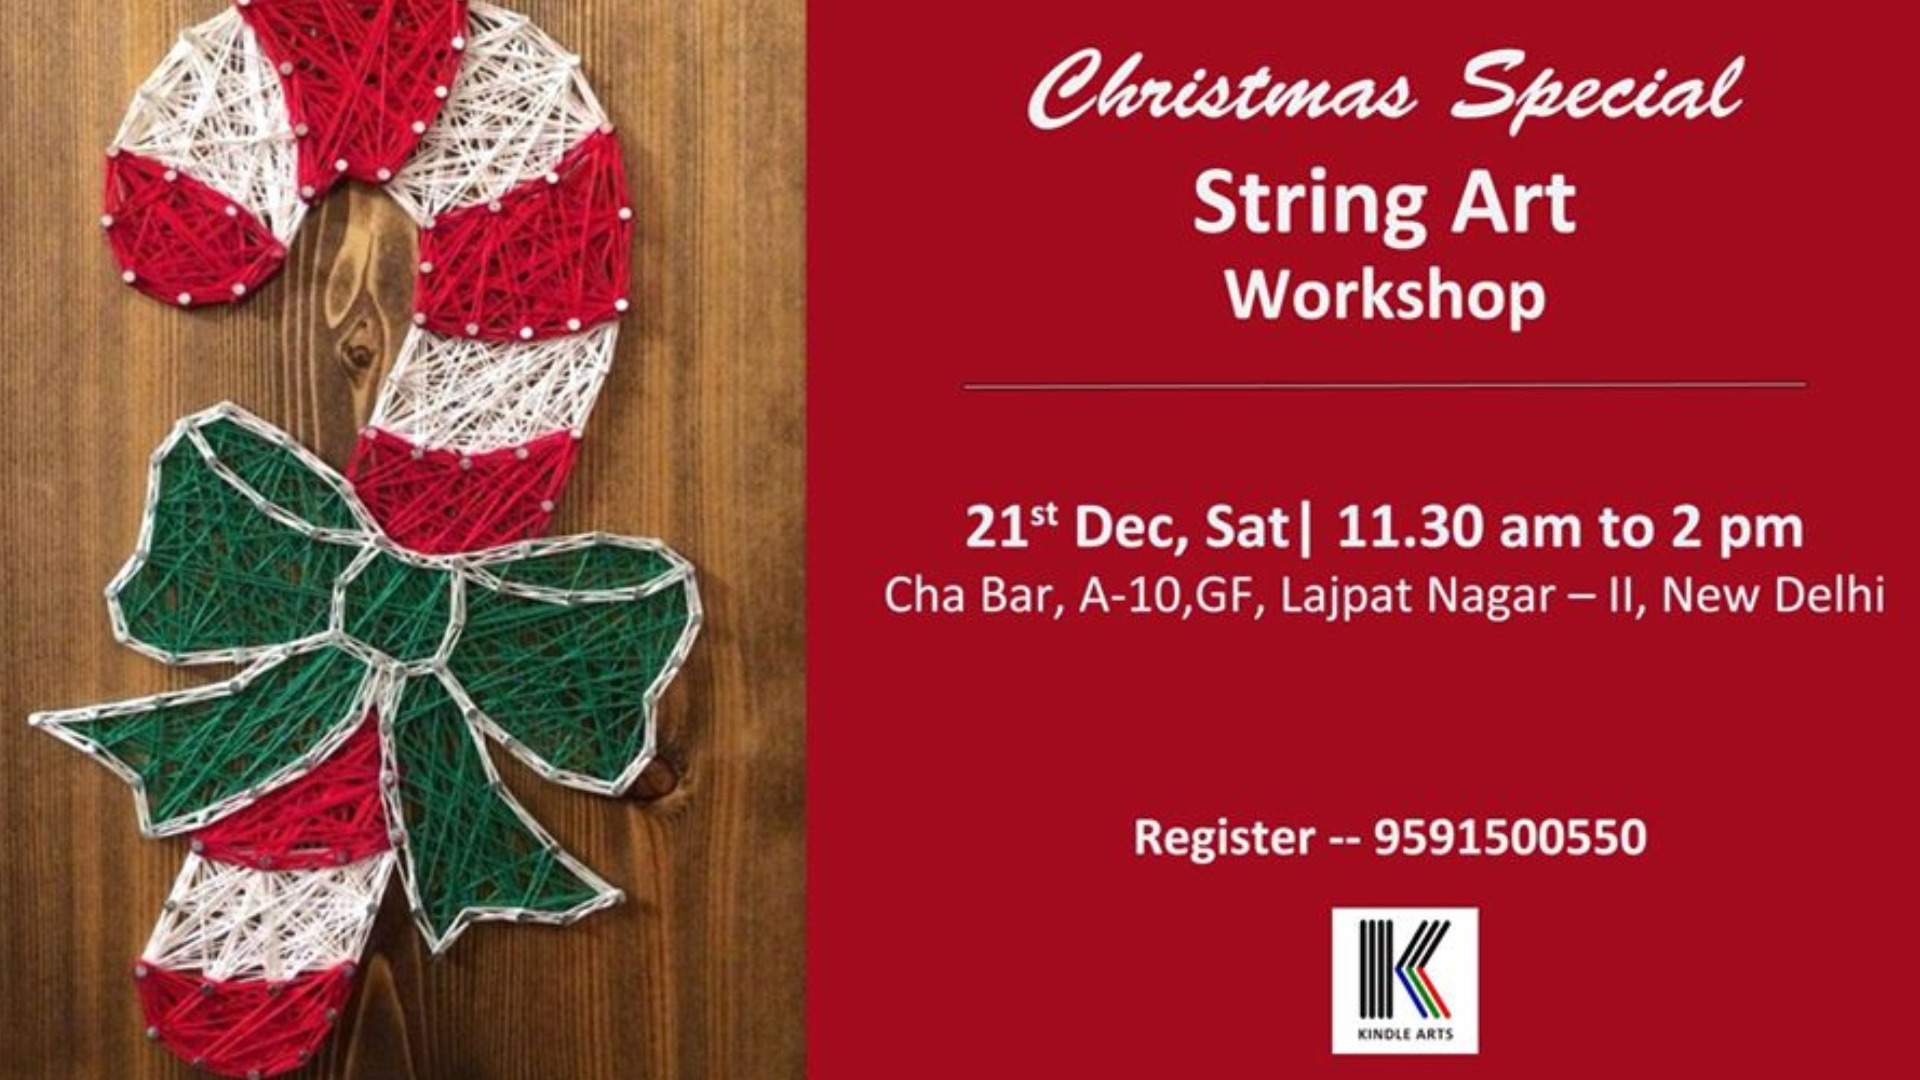 String Art Workshop | Kindle Arts, New Delhi, Delhi, India